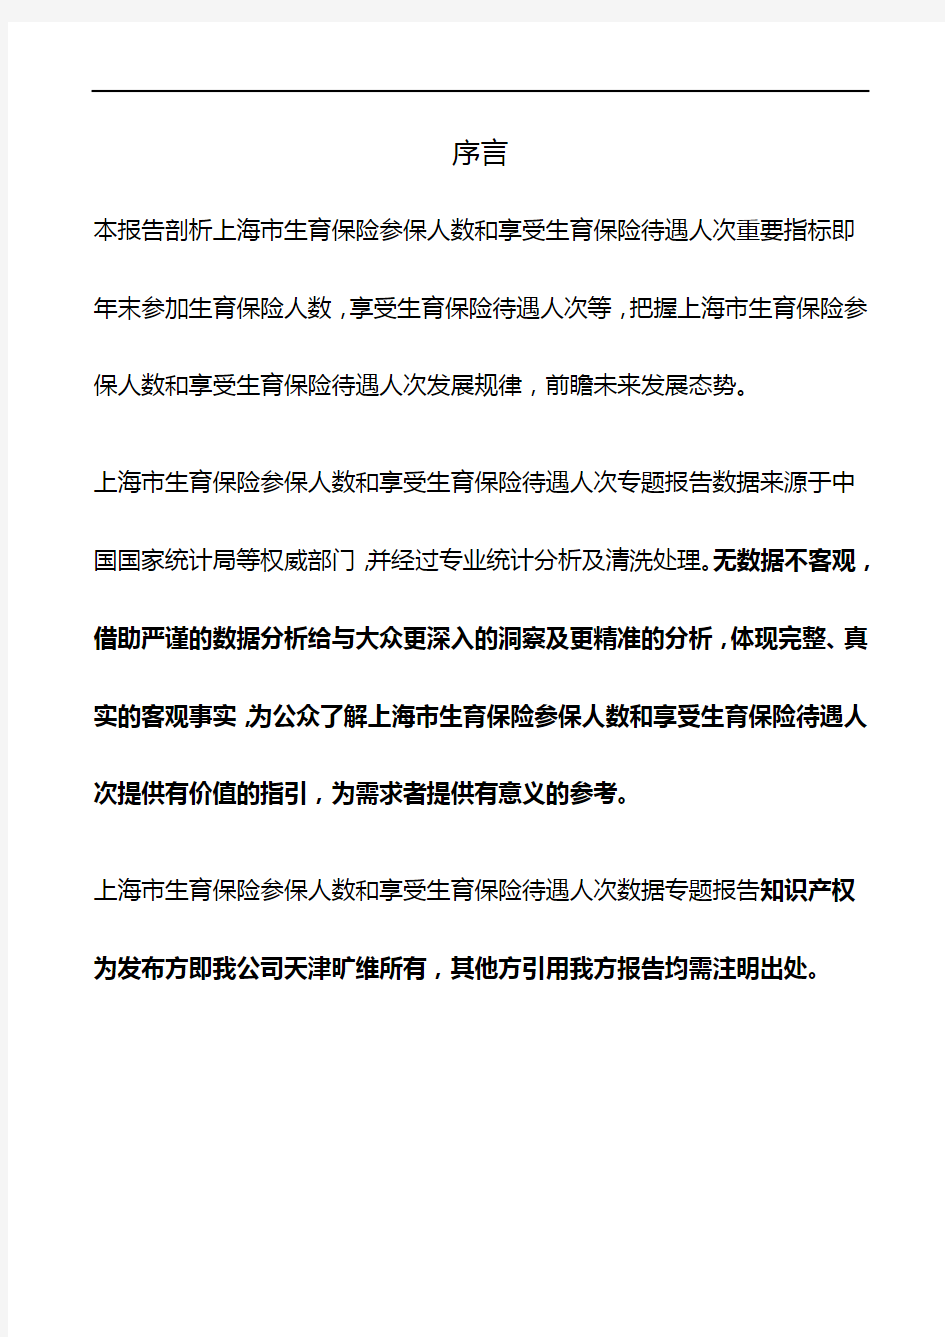 上海市生育保险参保人数和享受生育保险待遇人次3年数据专题报告2019版